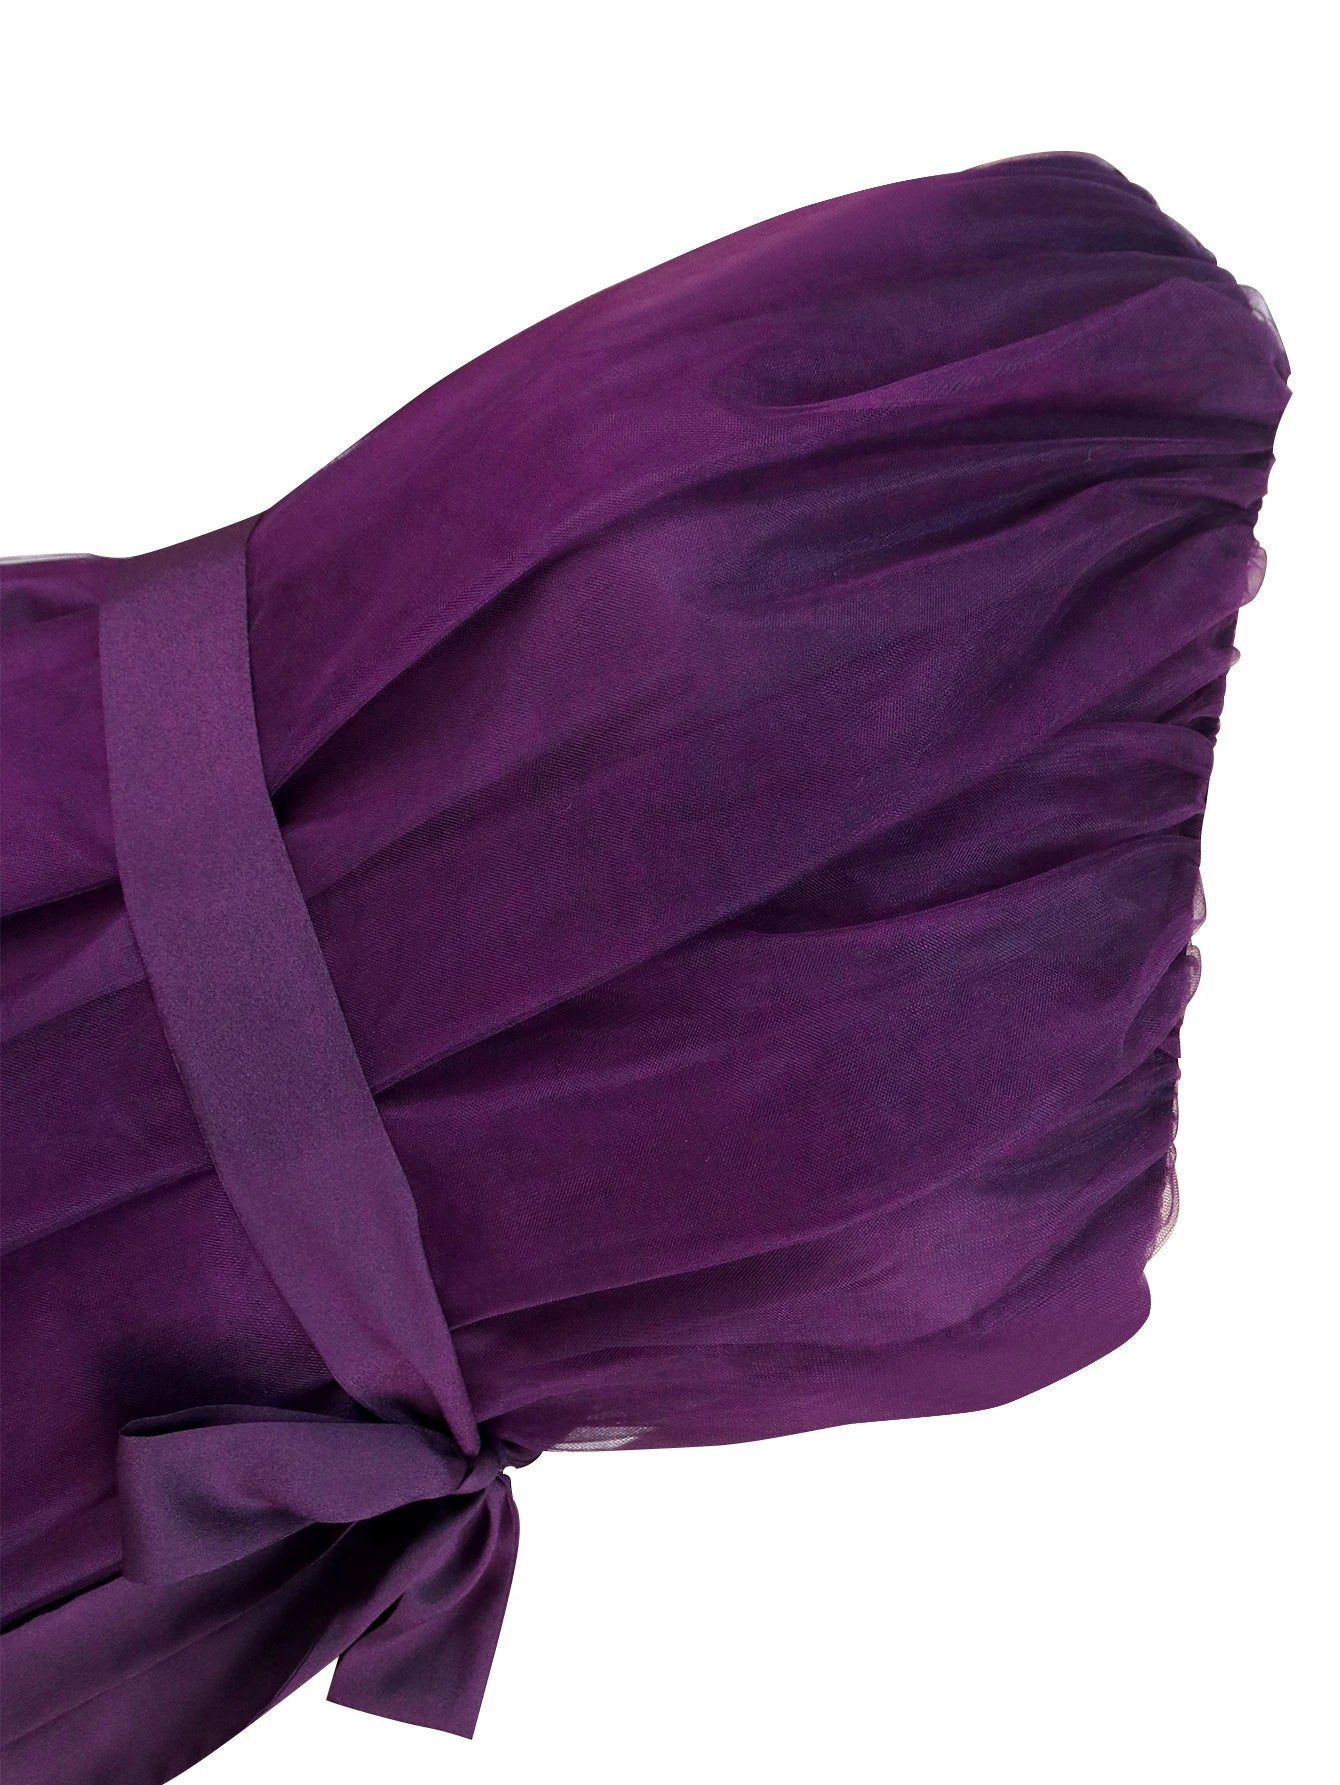 Plus Size One Shoulder Purple Shiny Dress